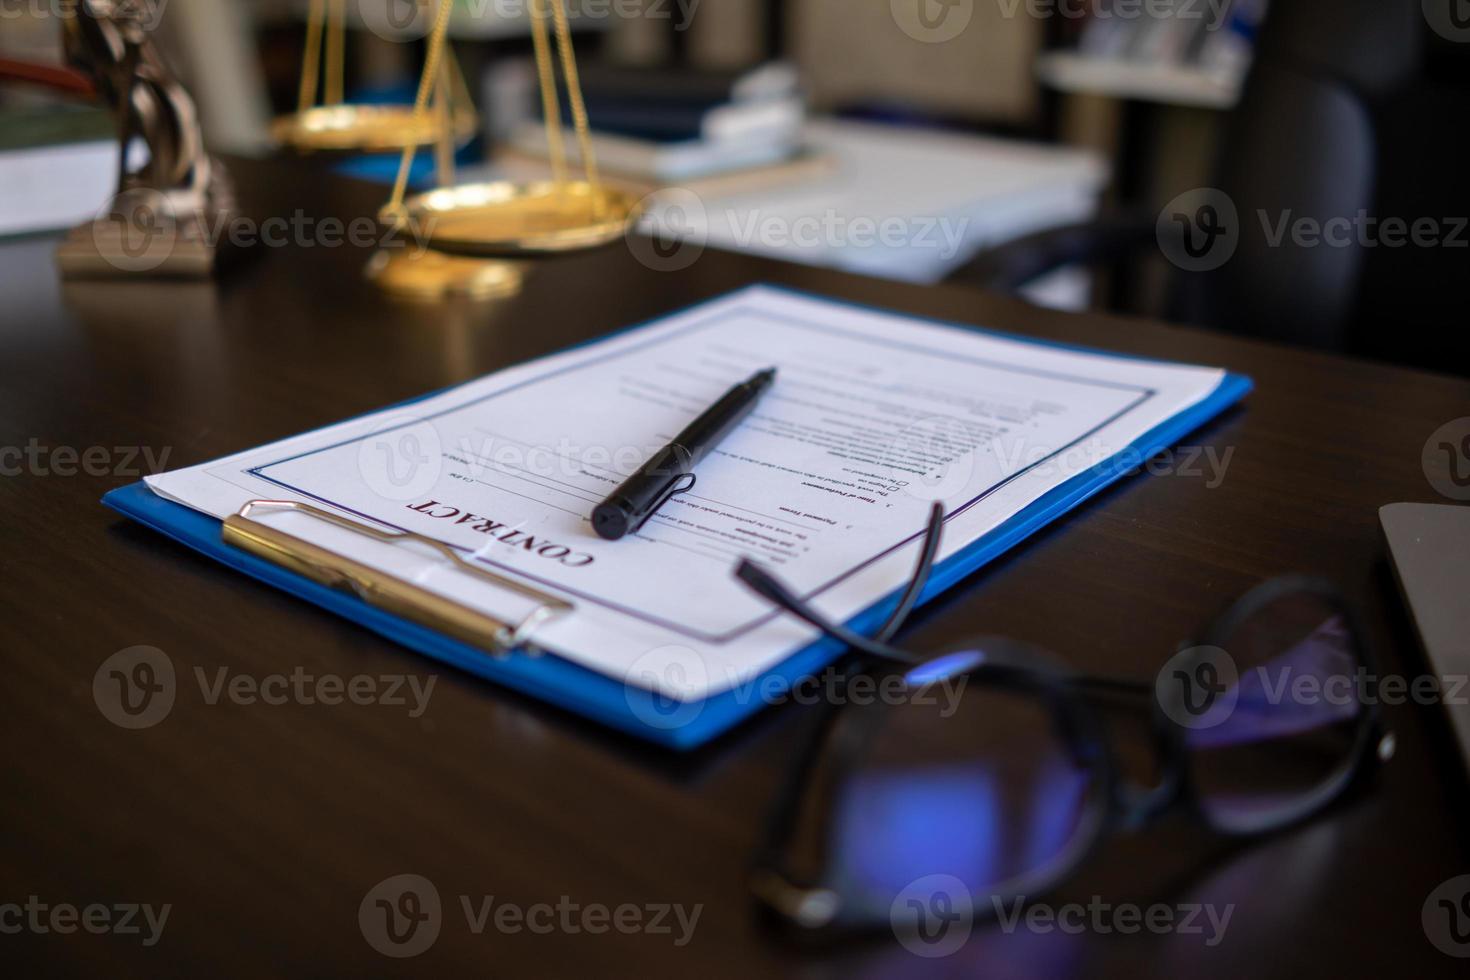 avocat en portant Contrat les documents dans main et en train de préparer à signe une consultant Contrat pour une équipe de affaires gens qui avoir besoin légal Conseil à courir leur affaires dans conformité avec le loi photo